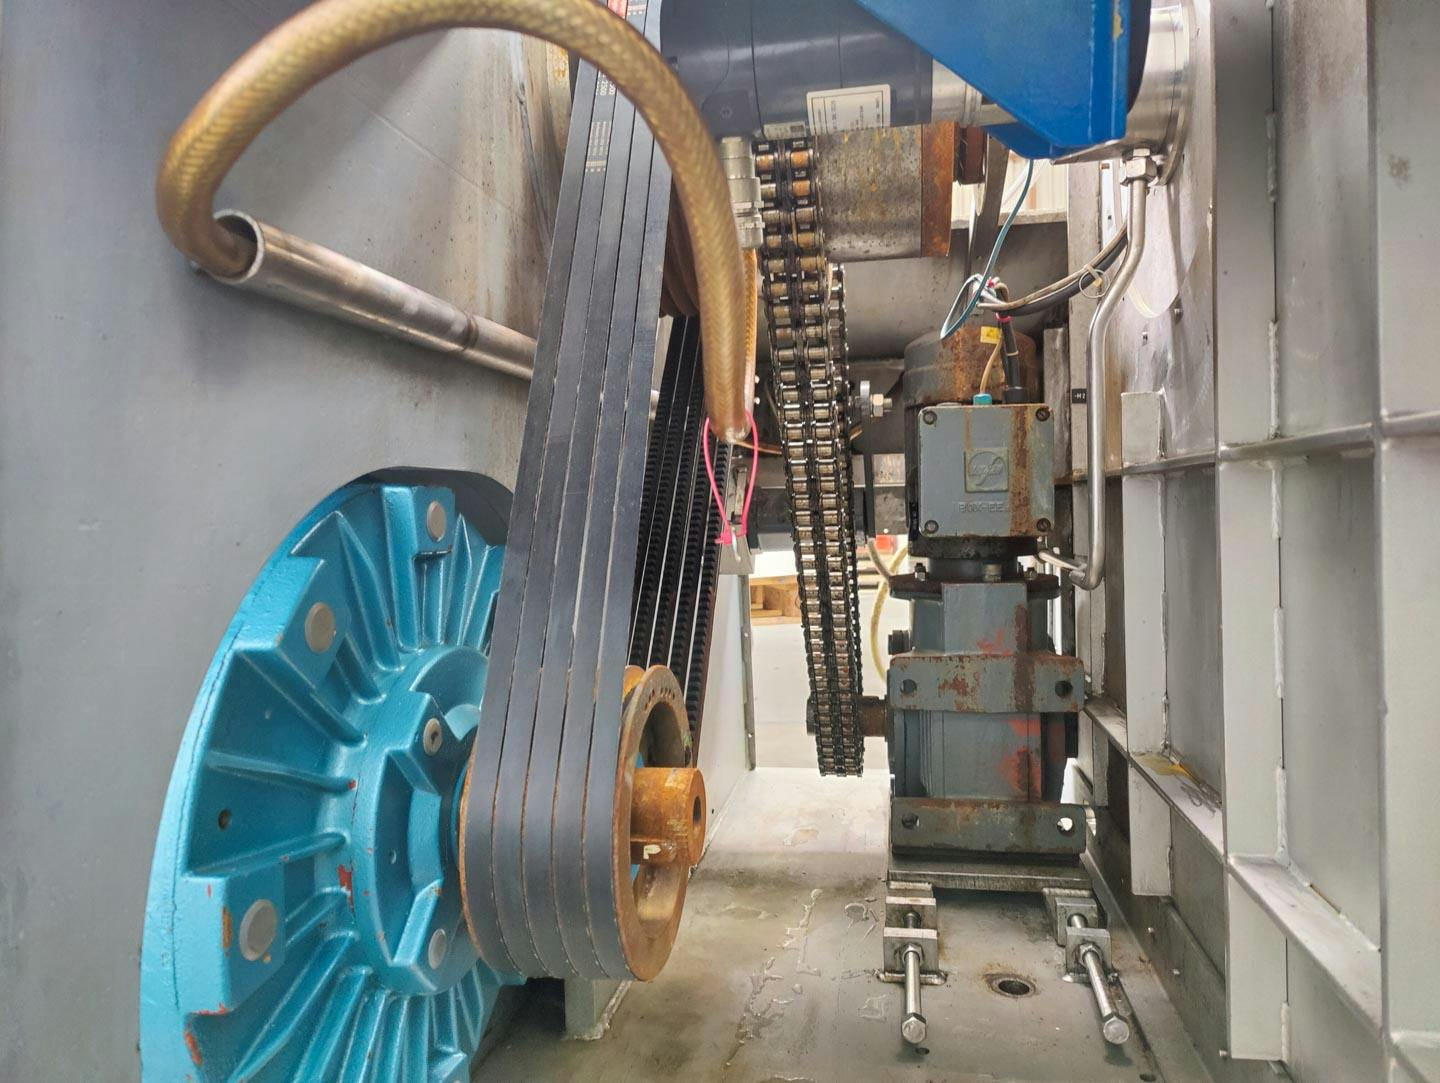 Fima Process Trockner TZT-1300 - centrifuge dryer - Košová odstredivka - image 11